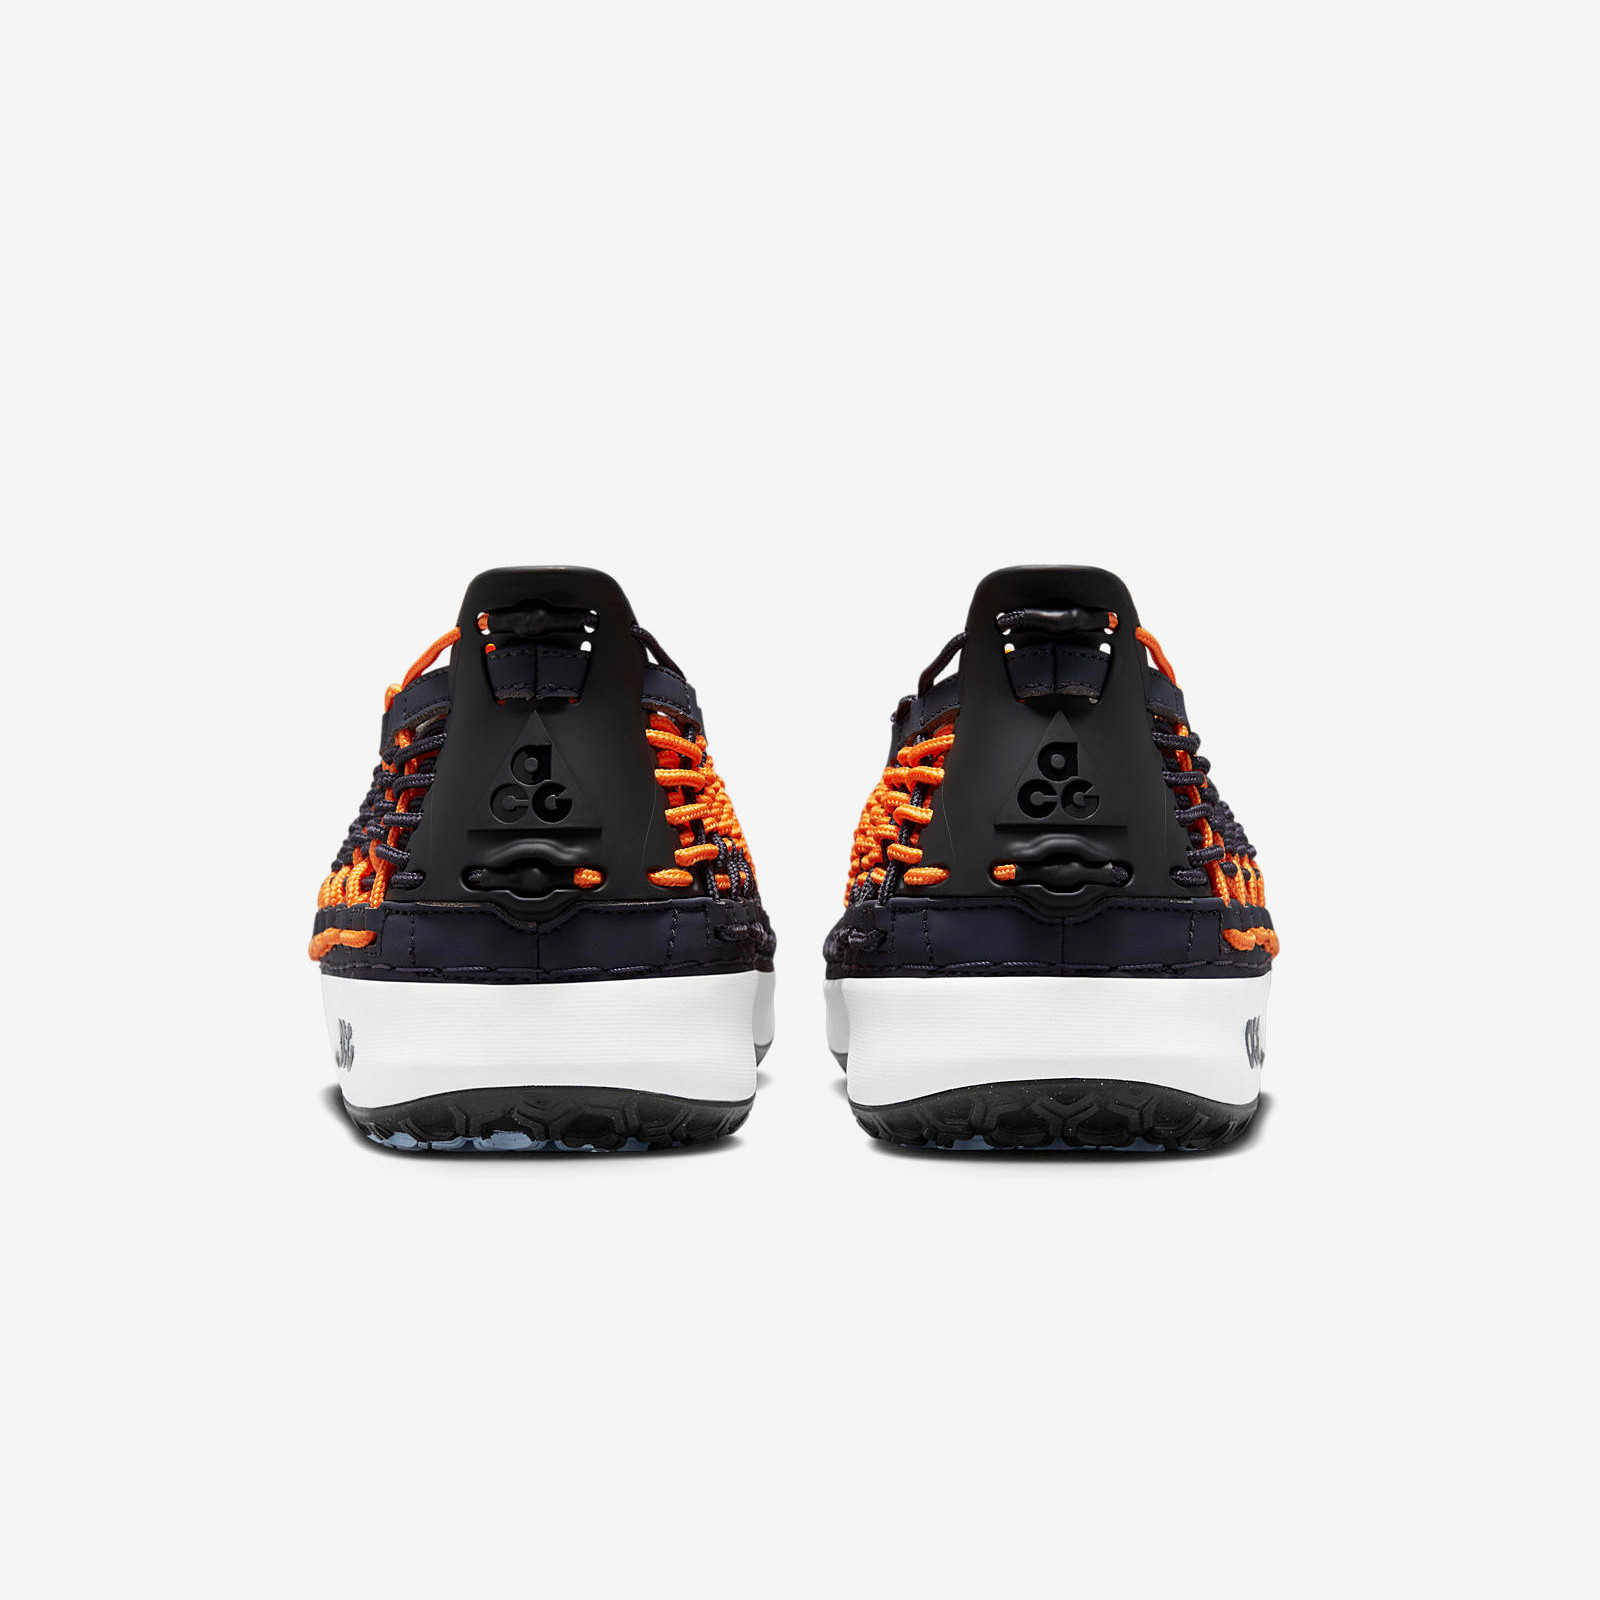 Nike ACG Watercat+
« Bright Mandarin »